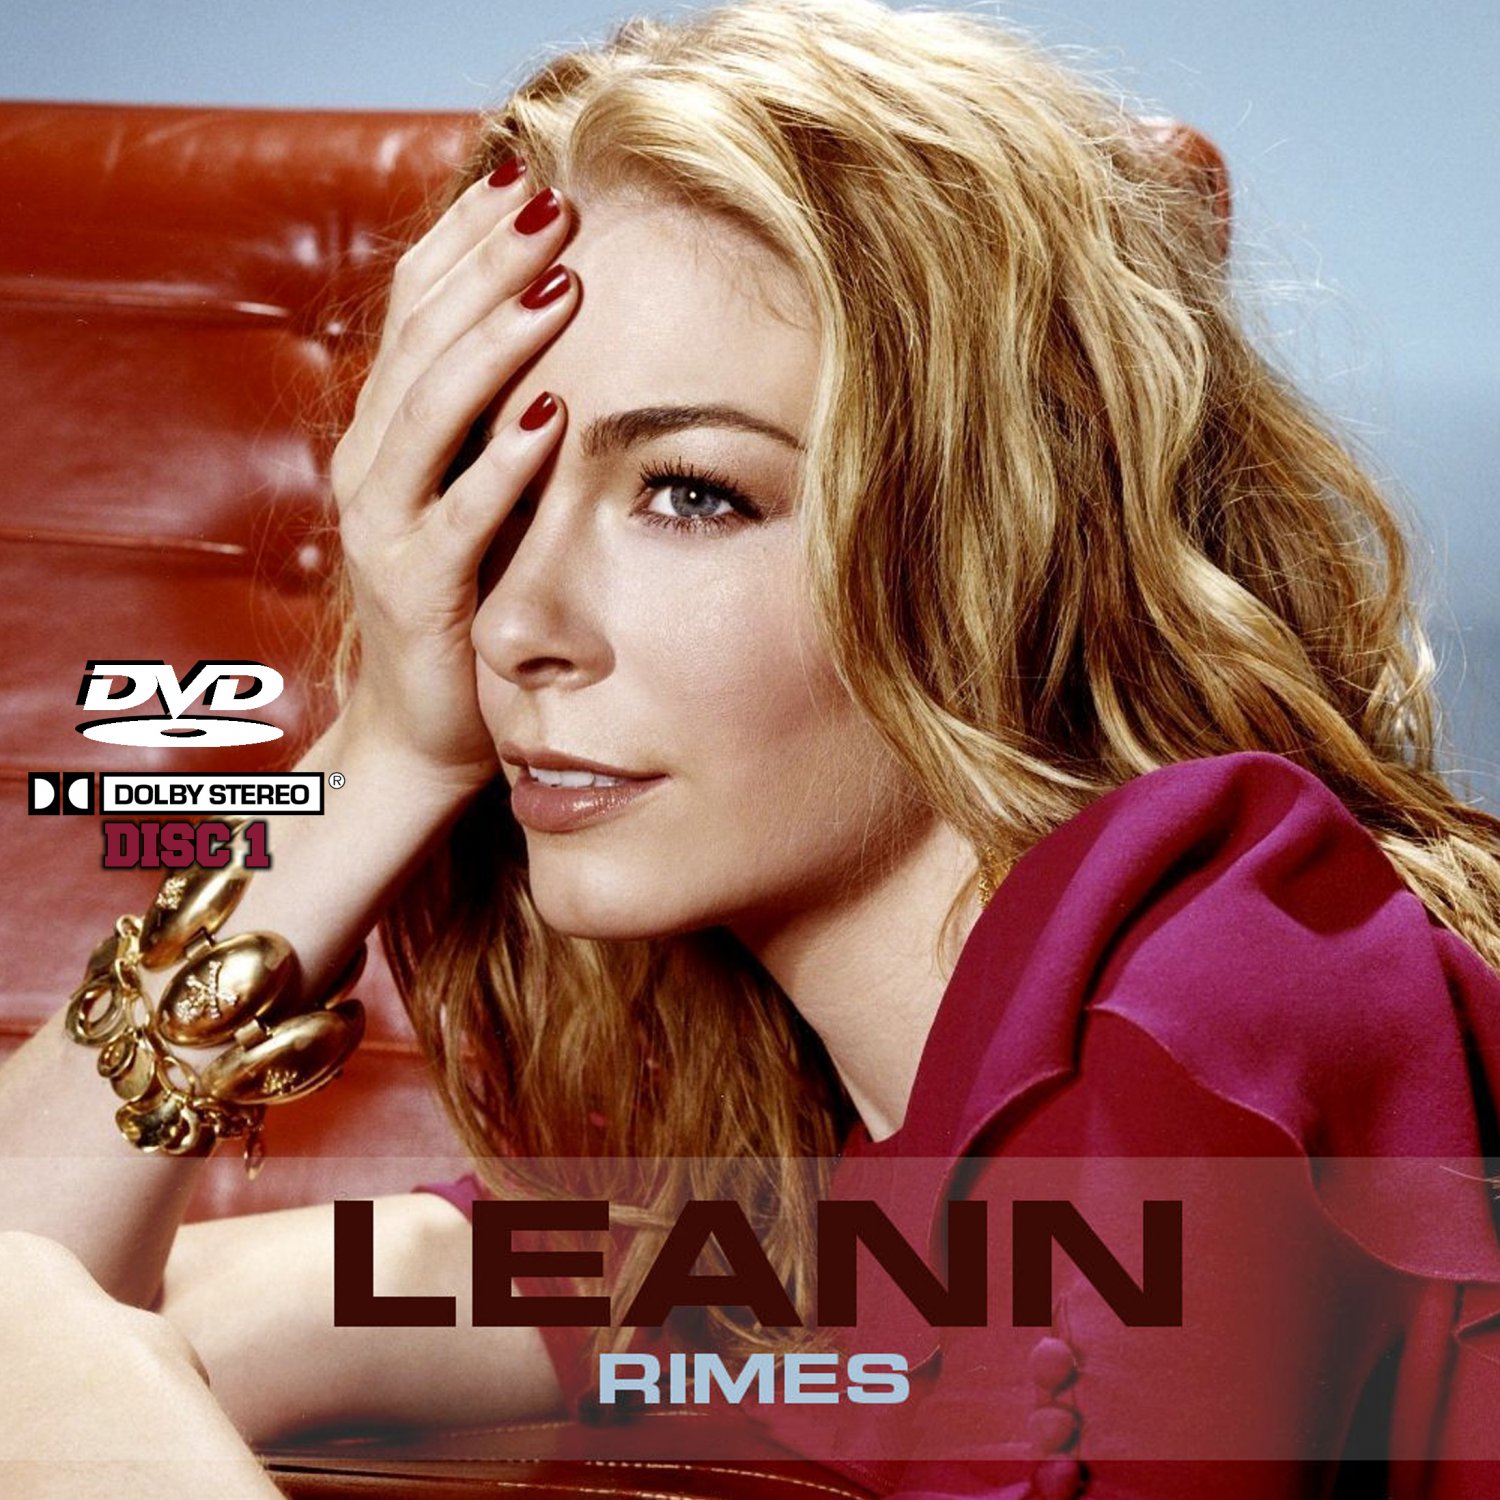 LeAnn Rimes Music Videos Collection (2 DVD's) 42 Music Videos